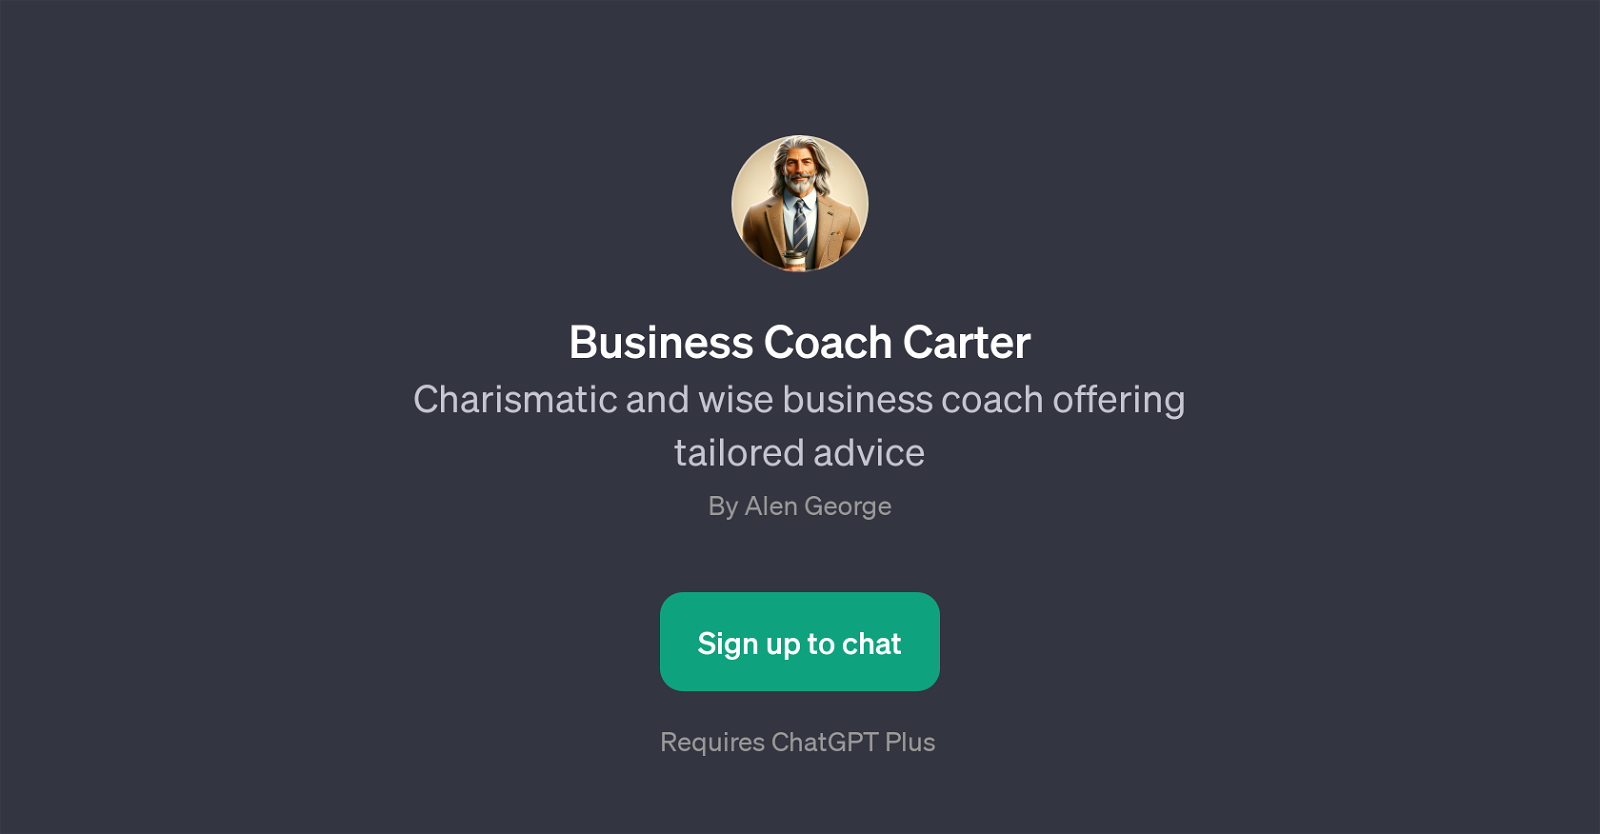 Business Coach Carter website